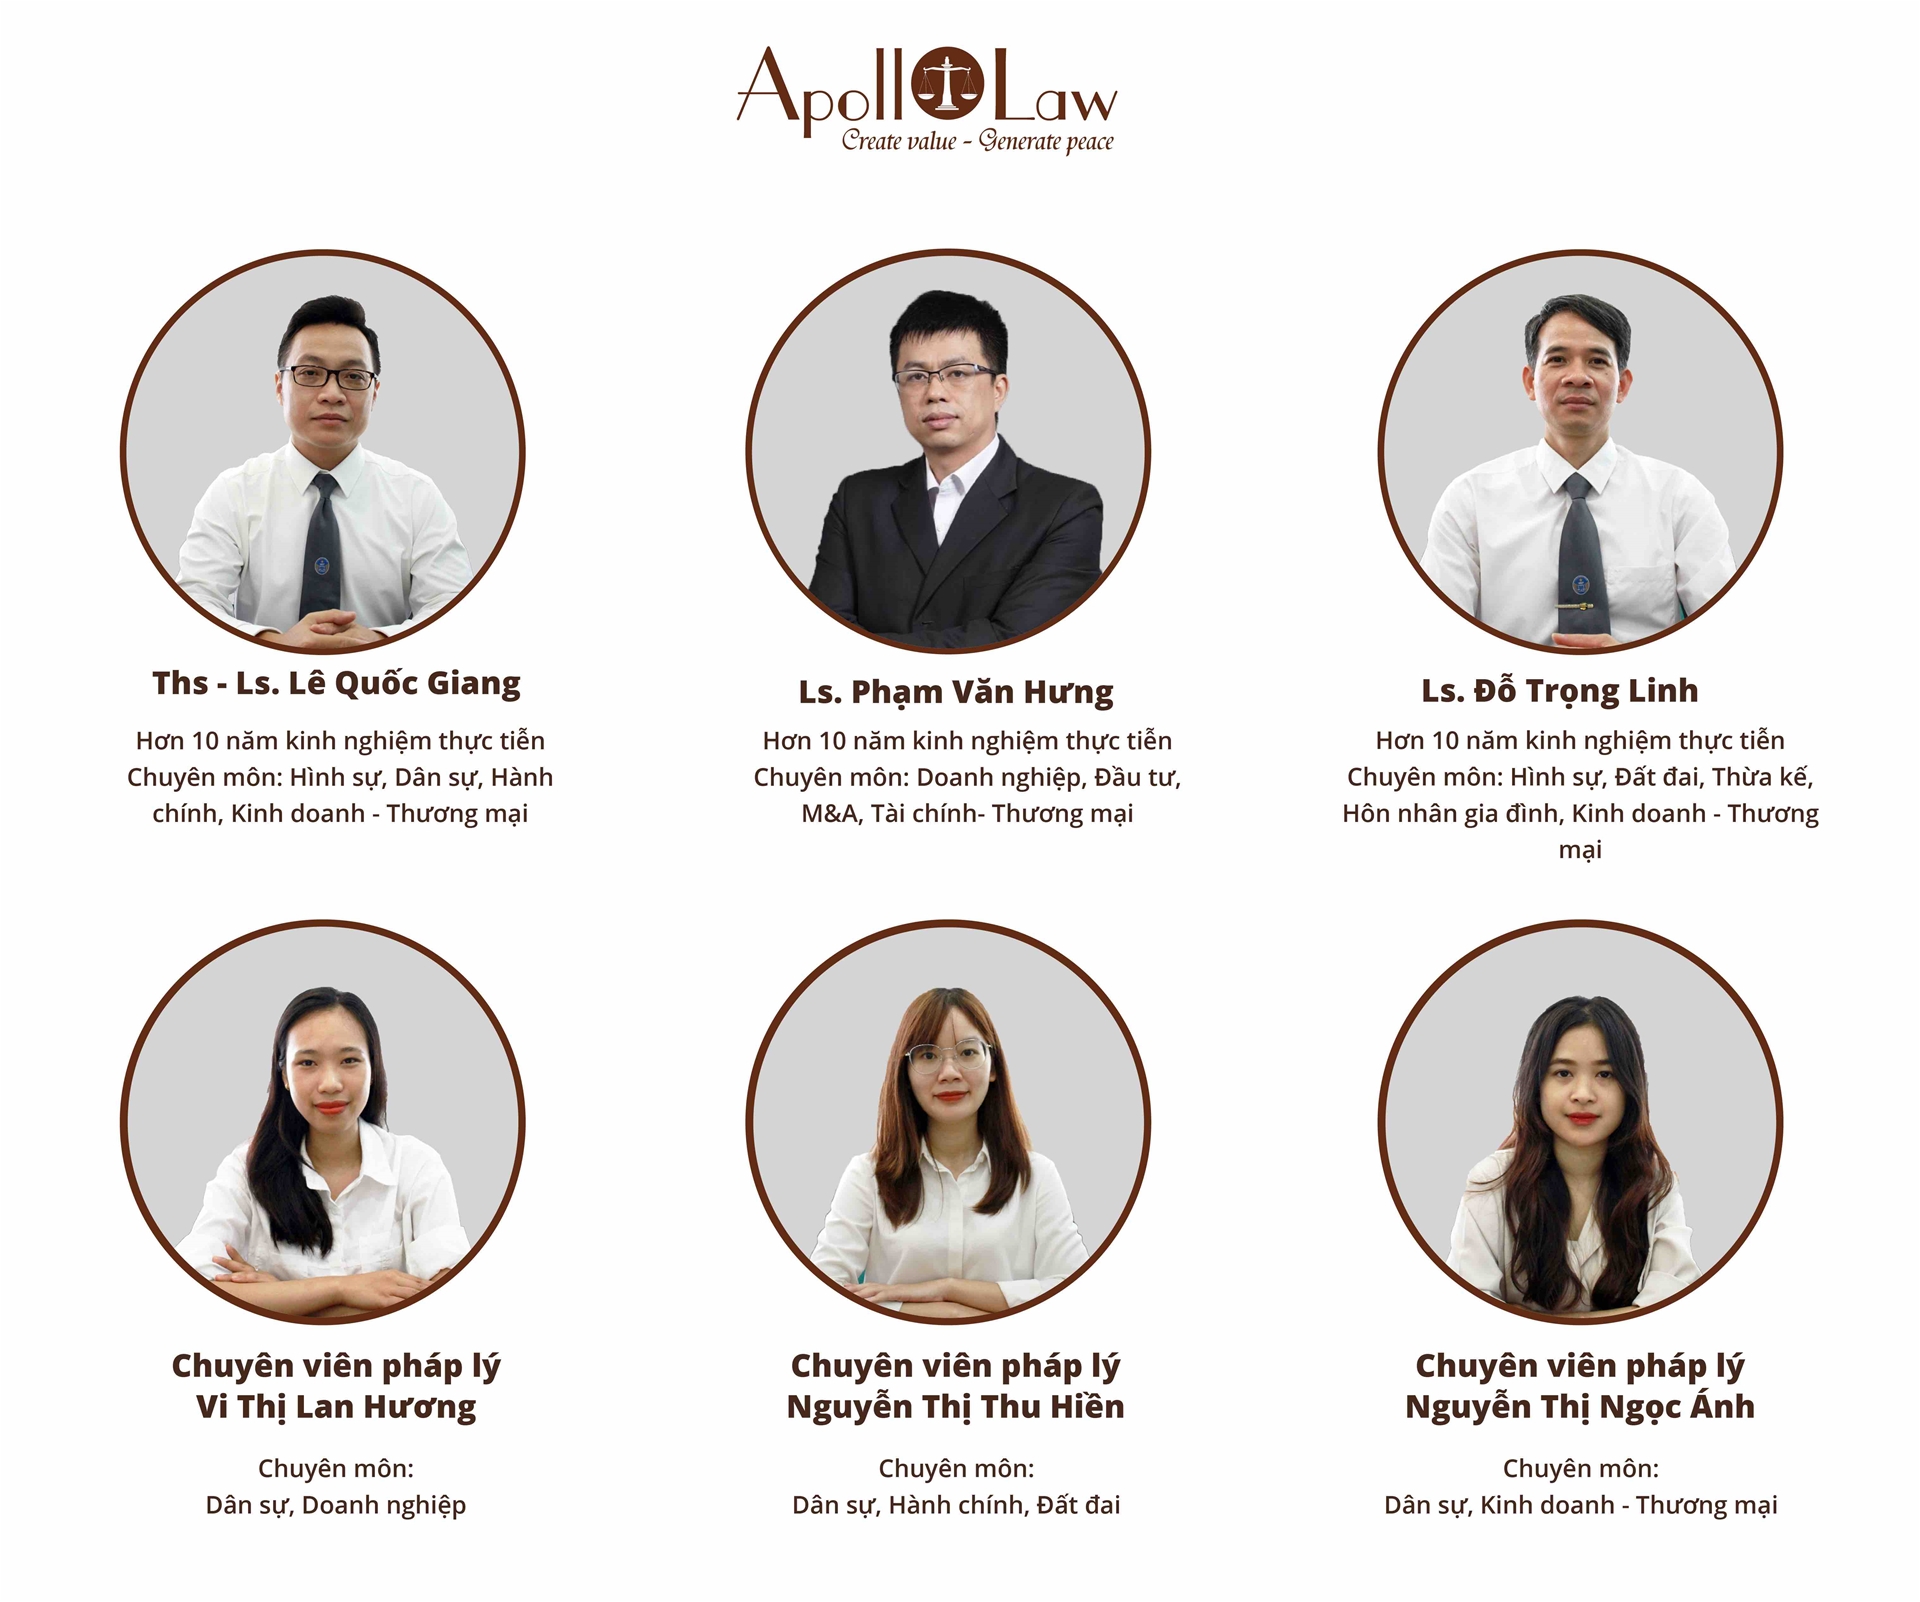 đội ngũ luật sư và chuyên viên pháp lý tư vấn luật doanh nghiệp apollo